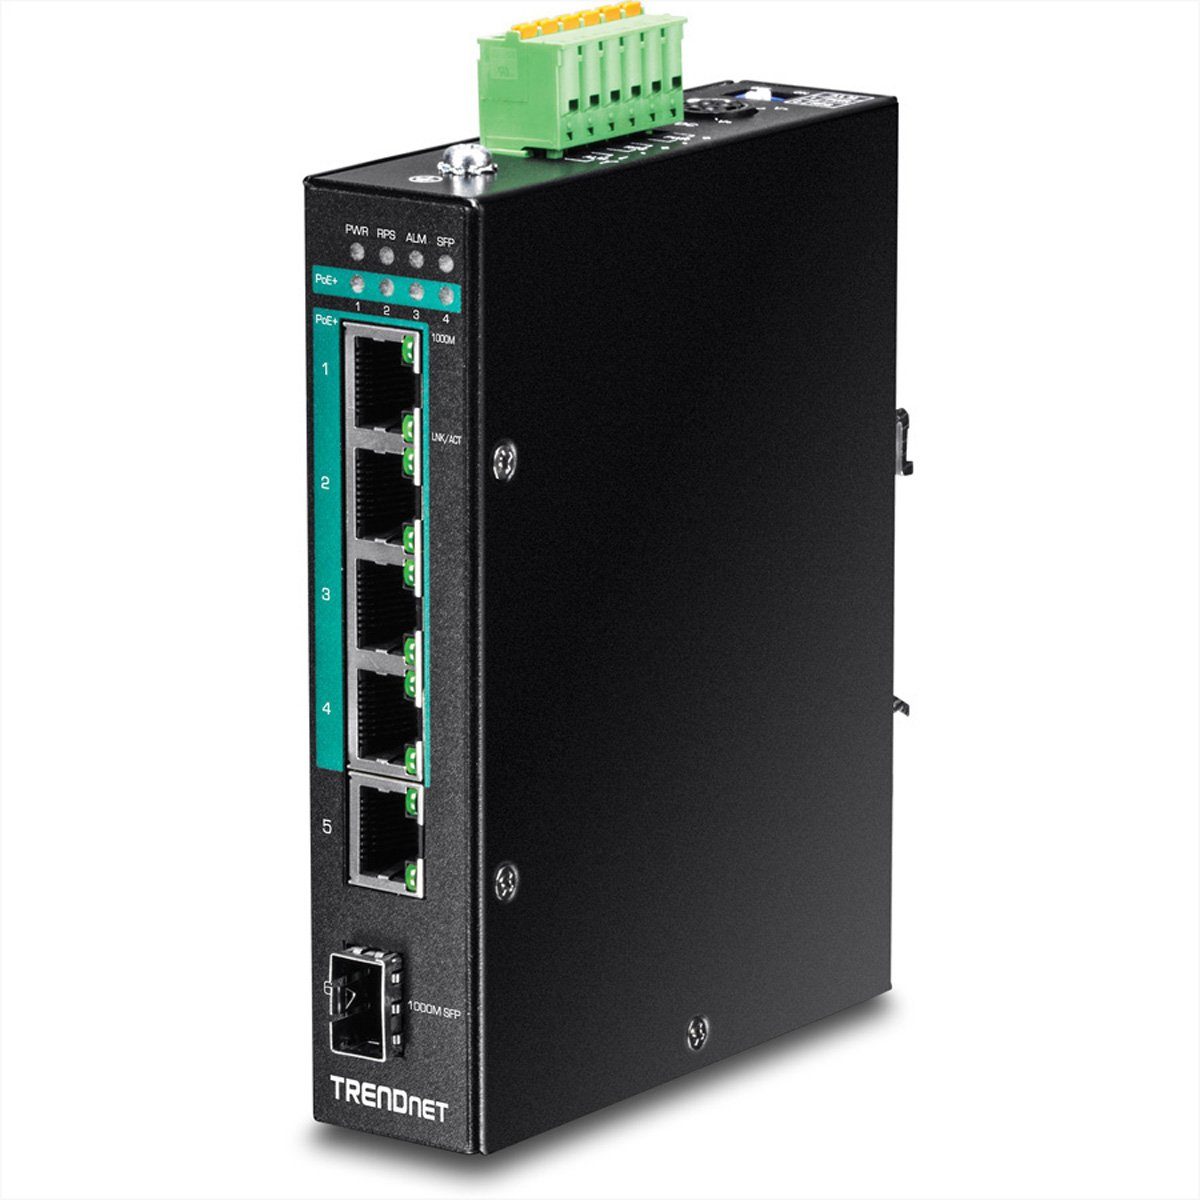 Trendnet TI-PG541i 6-Port Switch PoE+ Industrial Gigabit Layer 2 DIN-Rail Netzwerk-Switch